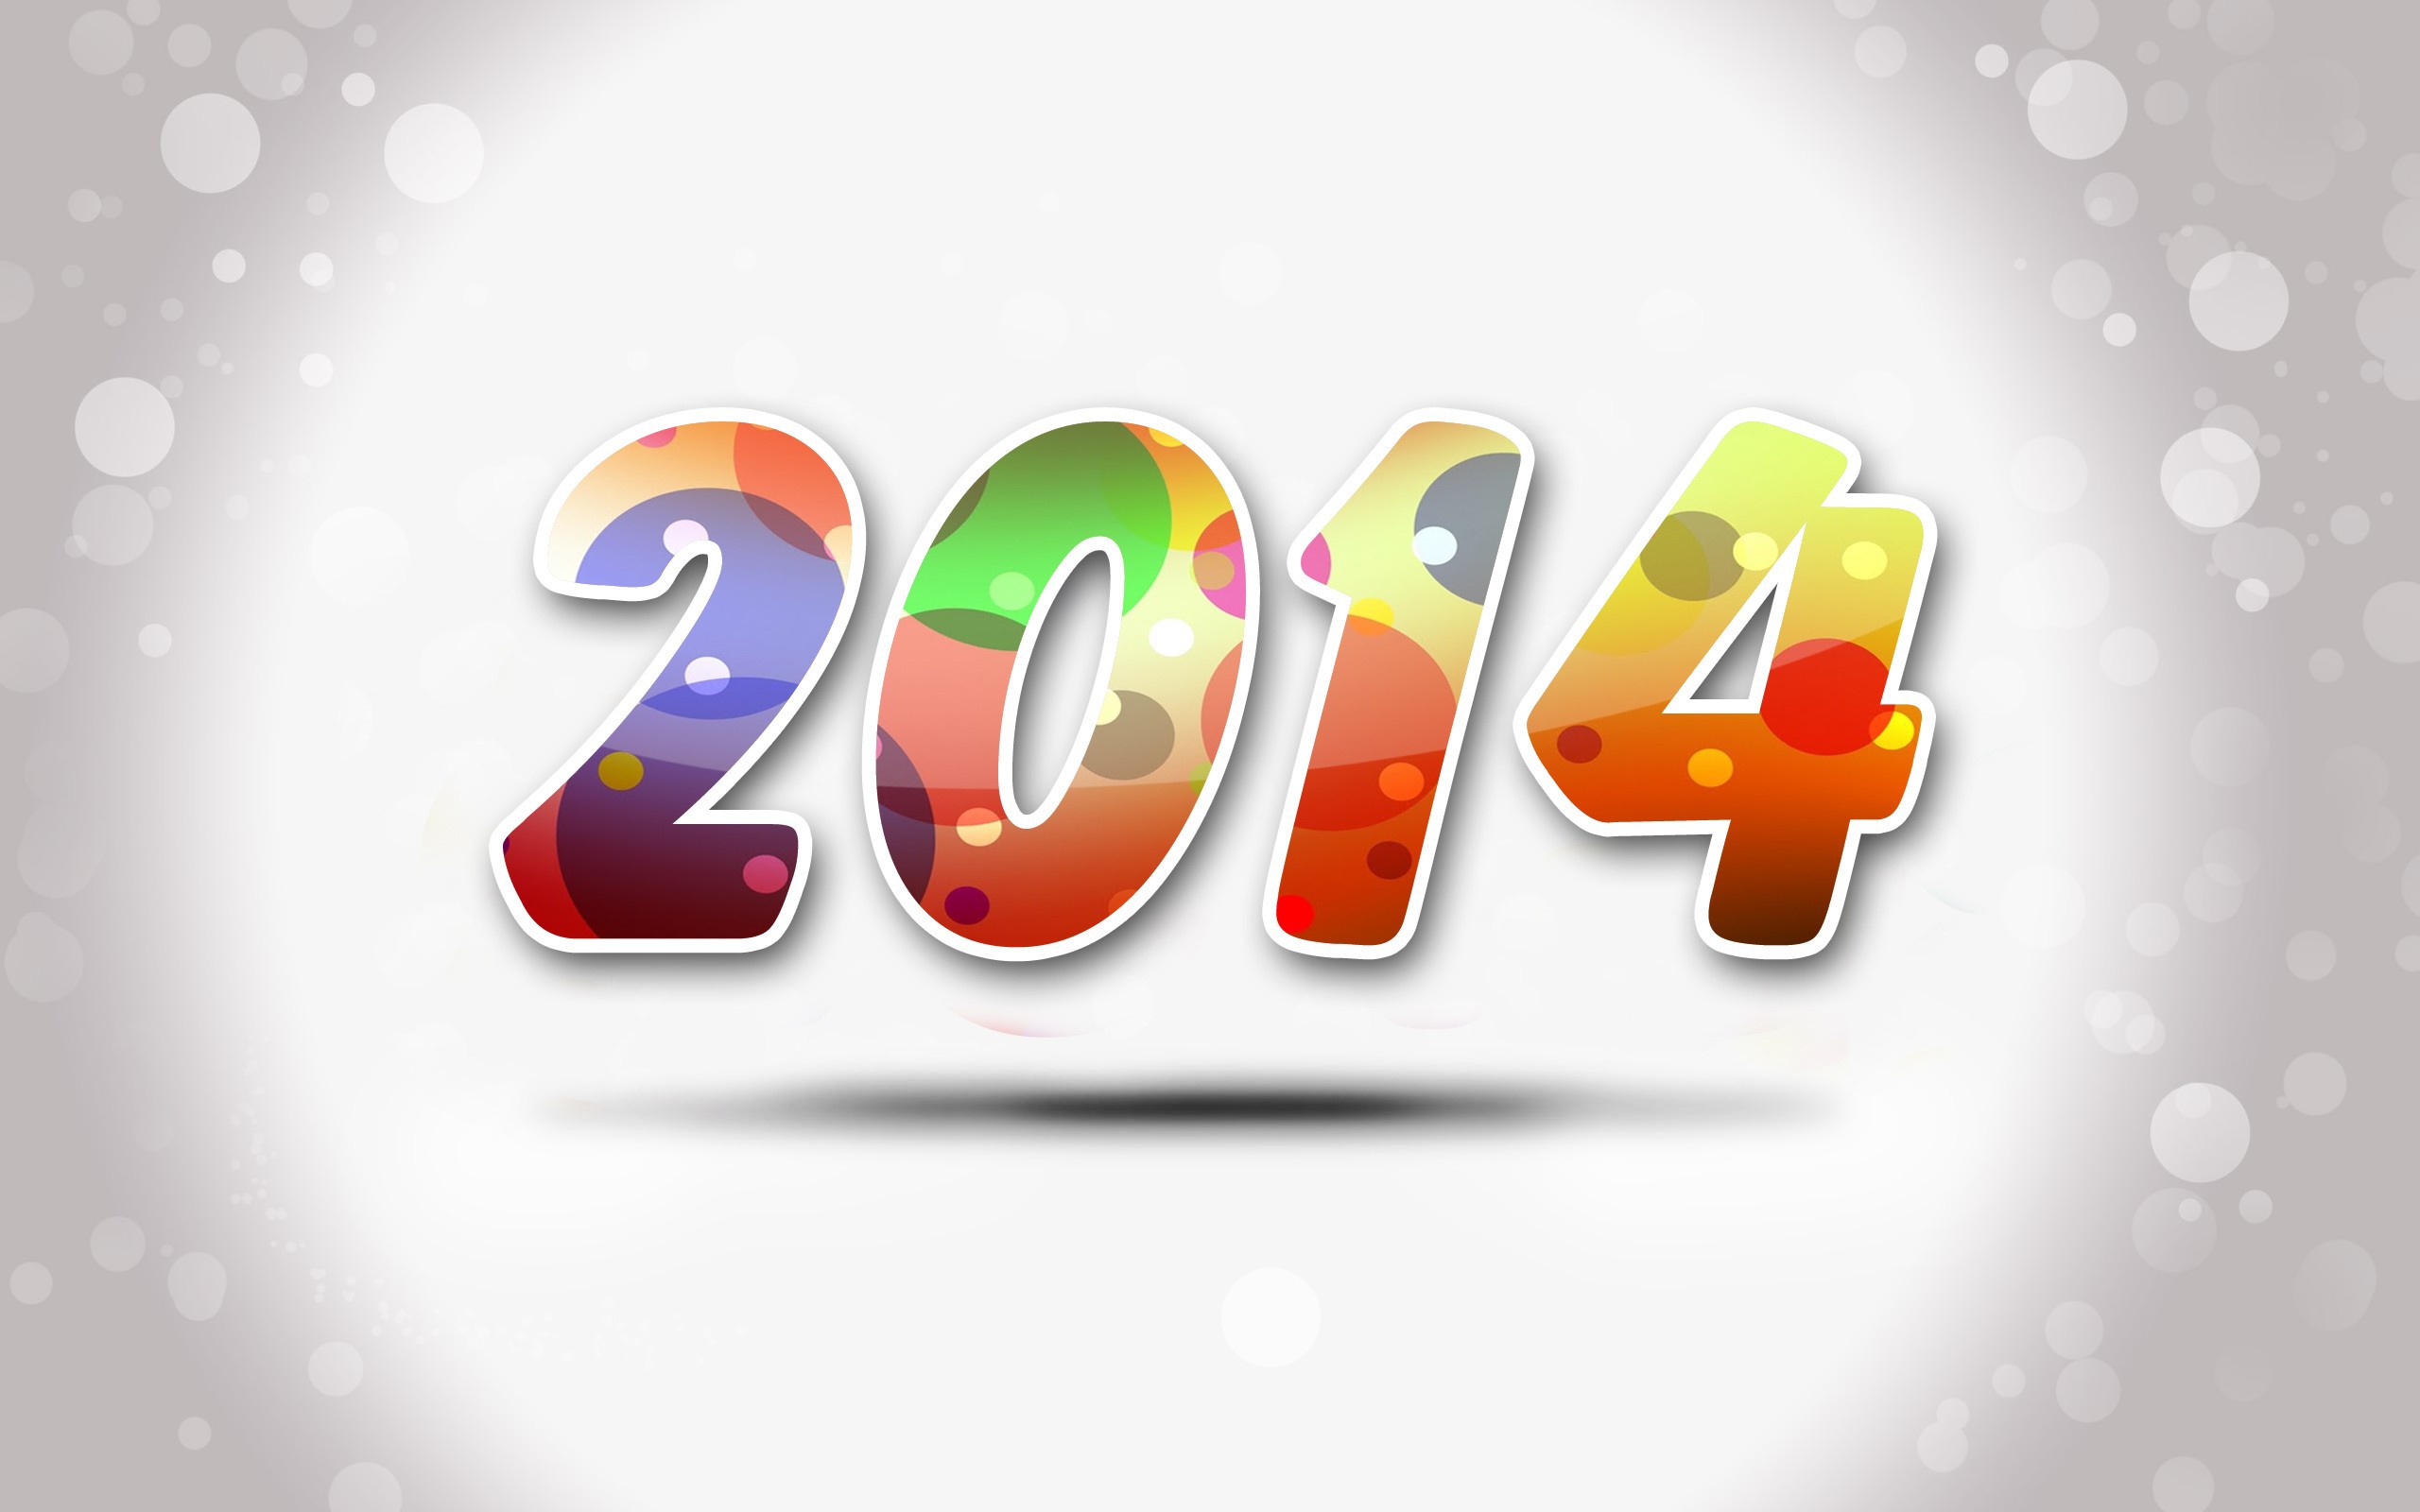 neue tapete 2014,text,schriftart,grafikdesign,grafik,veranstaltung